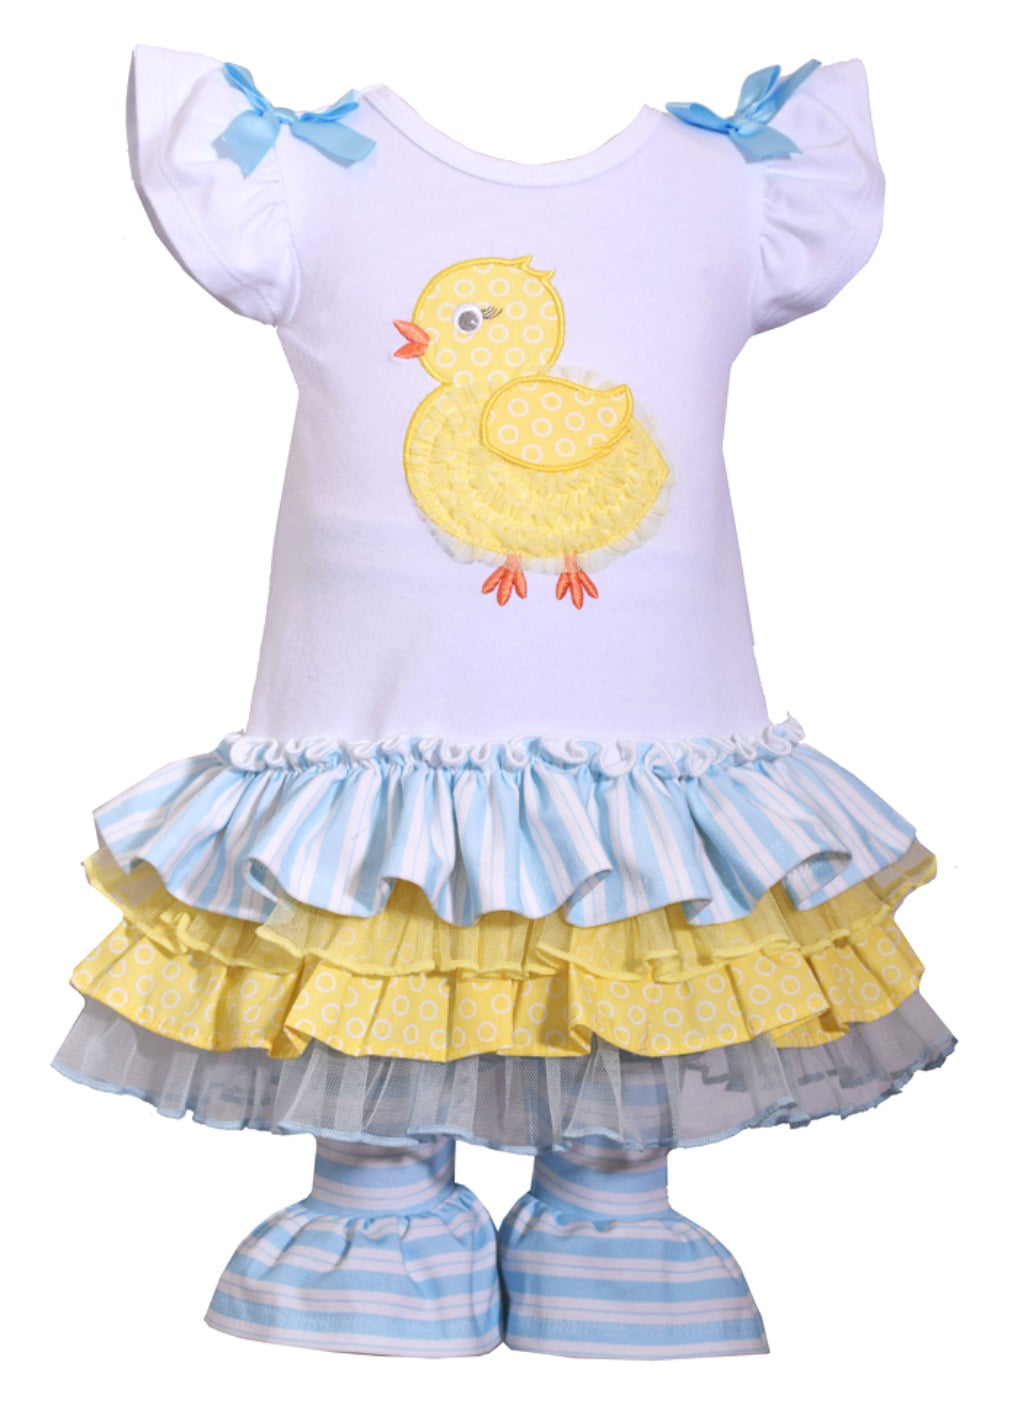 - Sailaway Stripe Kickee Pants Baby Girls Print Ruffle Skirt Girl Toddler 12-18 Months